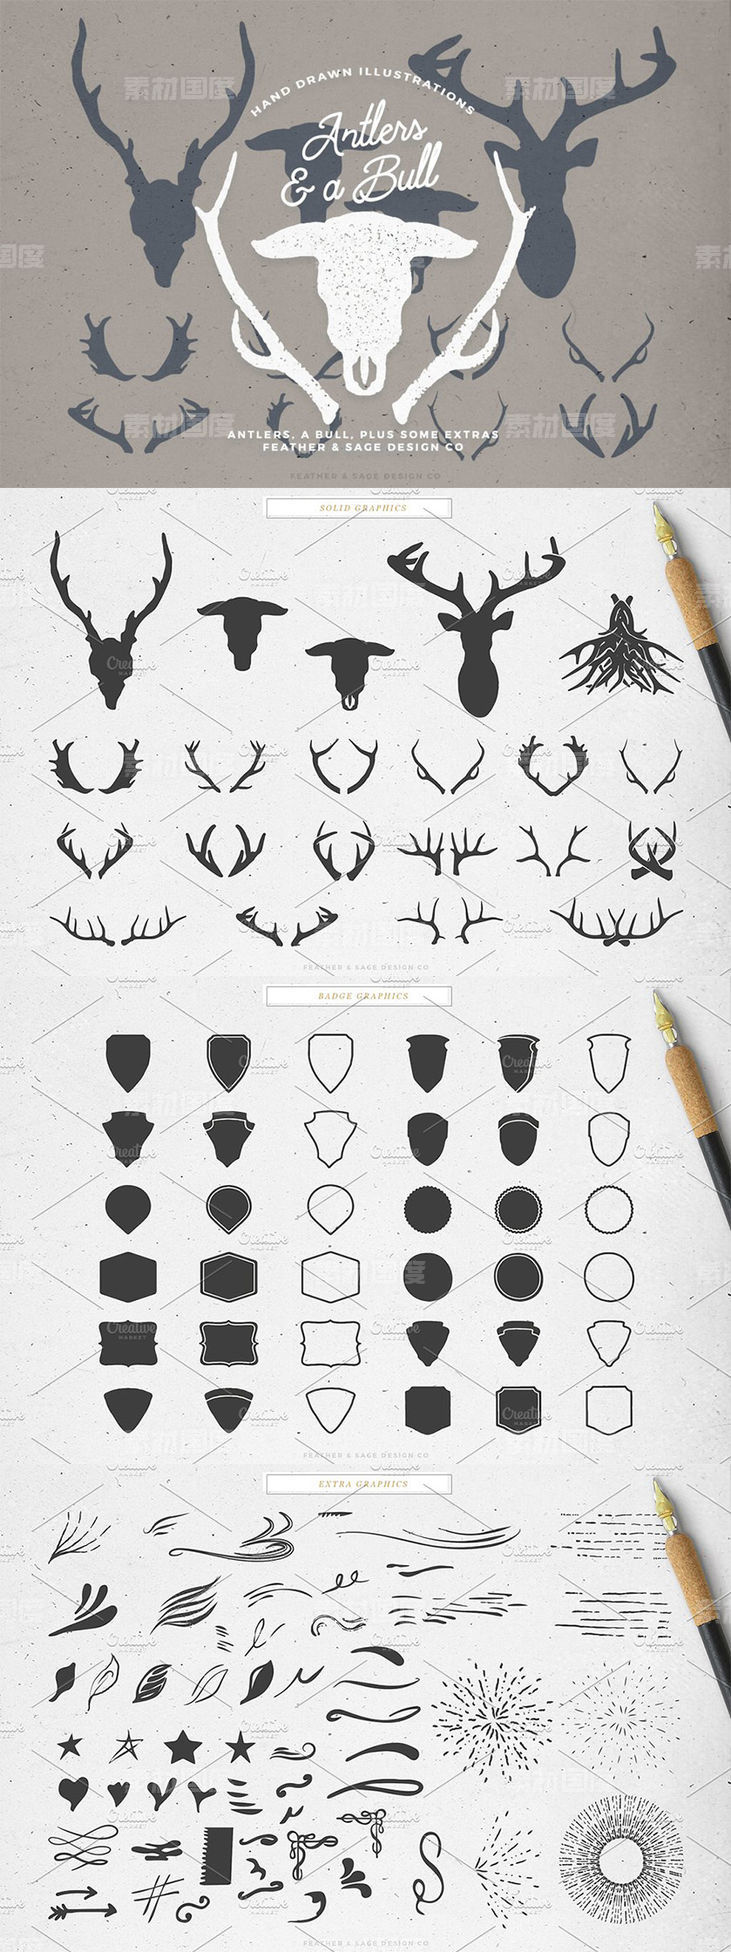 鹿角公牛手绘矢量插图 Antlers a Bull Vector Graphics